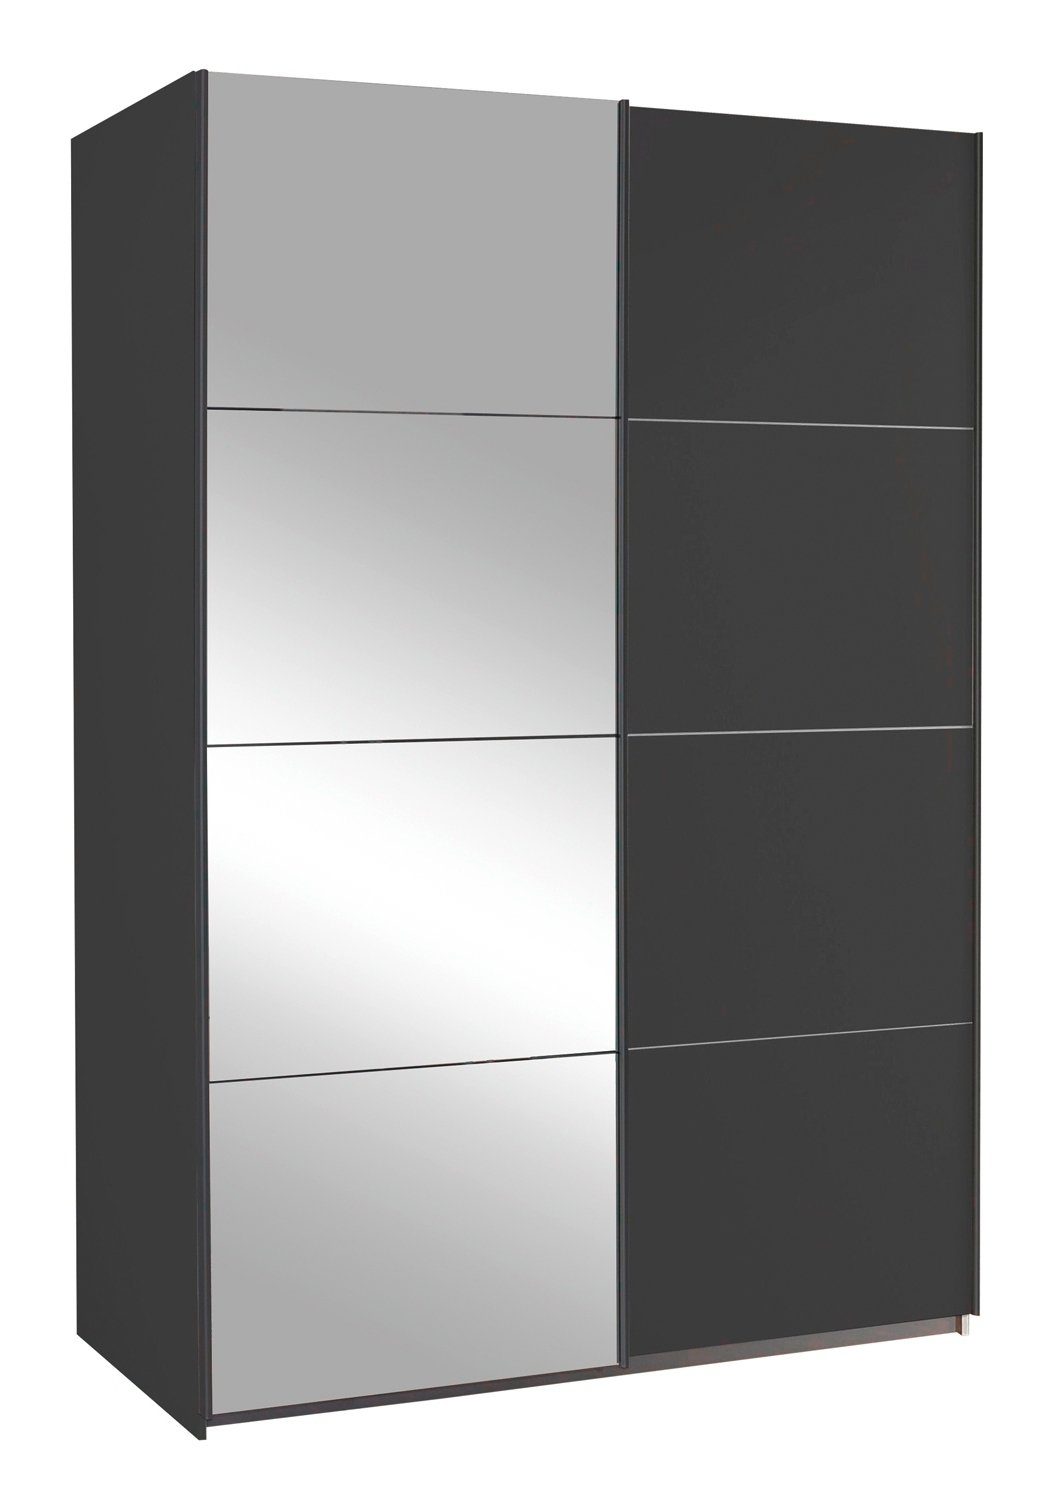 rauch Schwebetürenschrank QUADRA, Grau Metallic, B 136 cm x H 210 cm, mit Spiegel